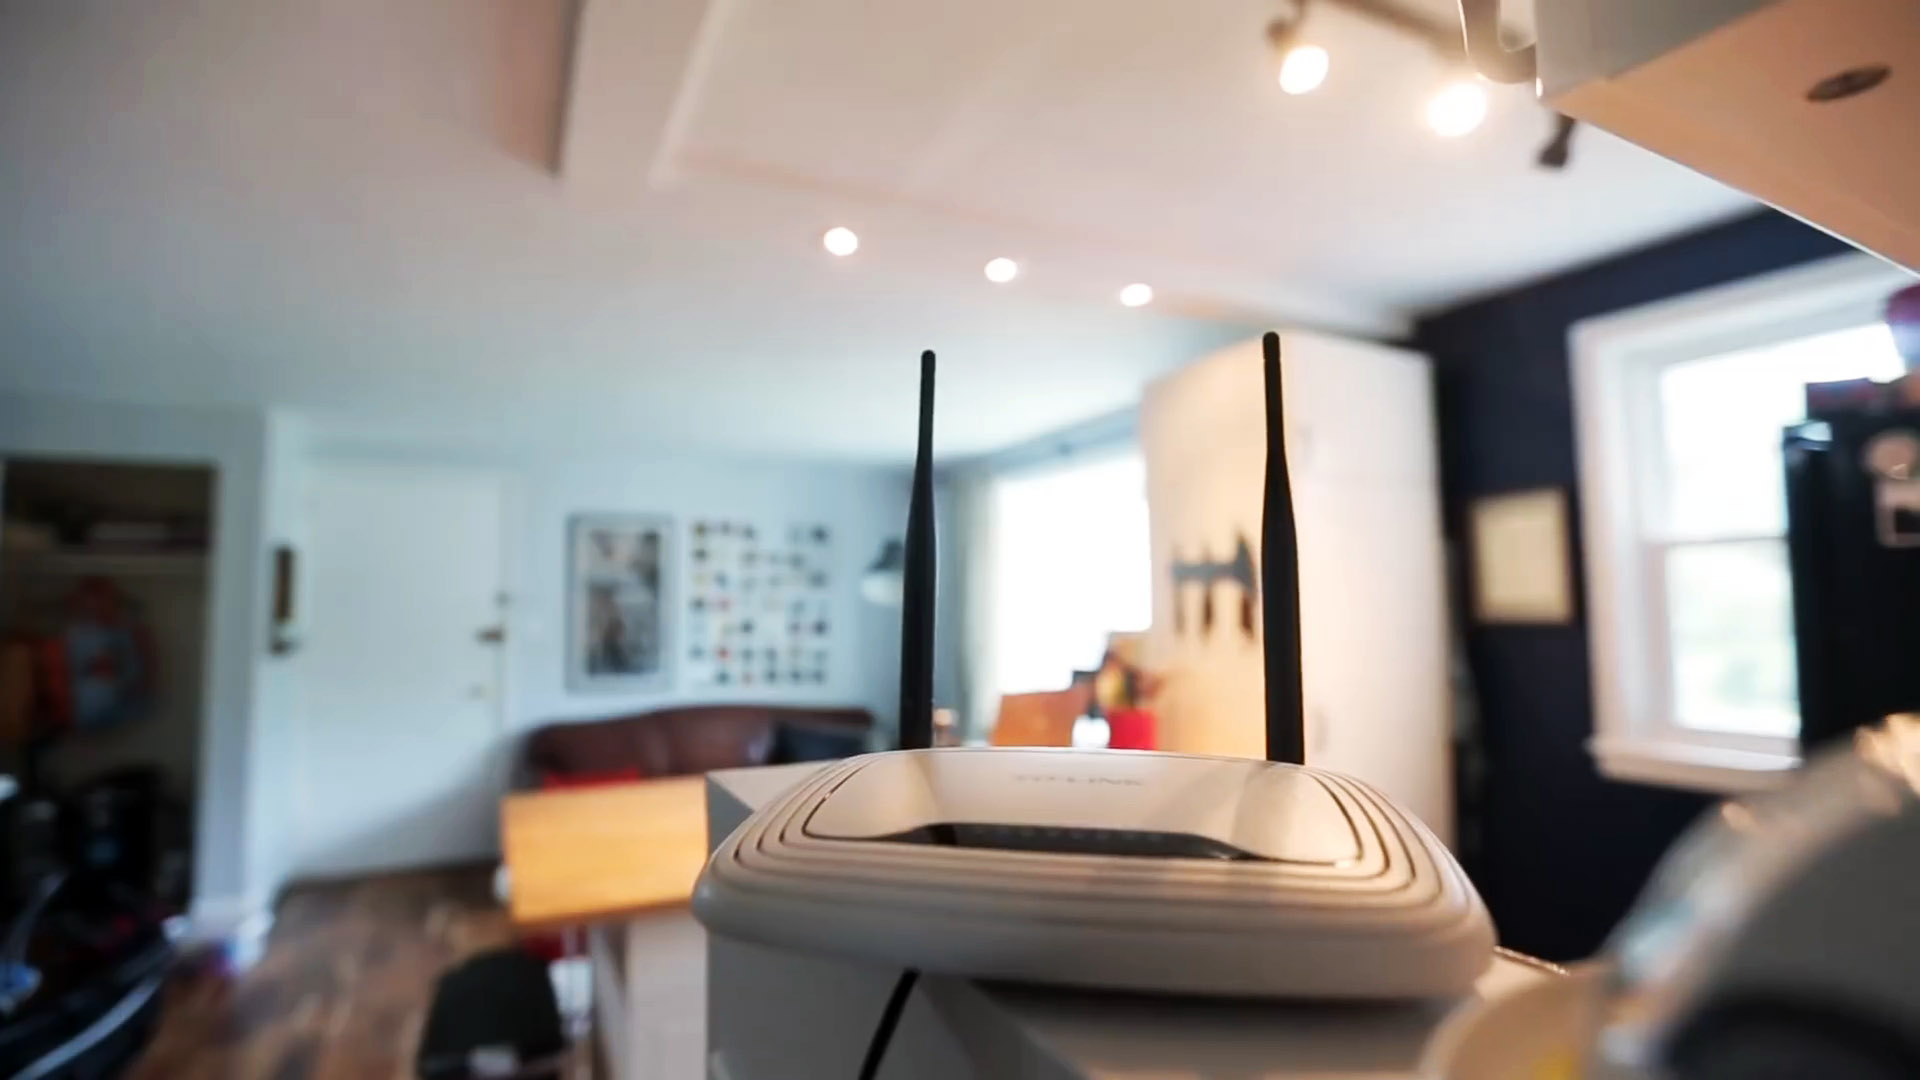 Хотите надежный Wi-Fi сигнал по всей квартире? Тогда вот вам 5 простых советов